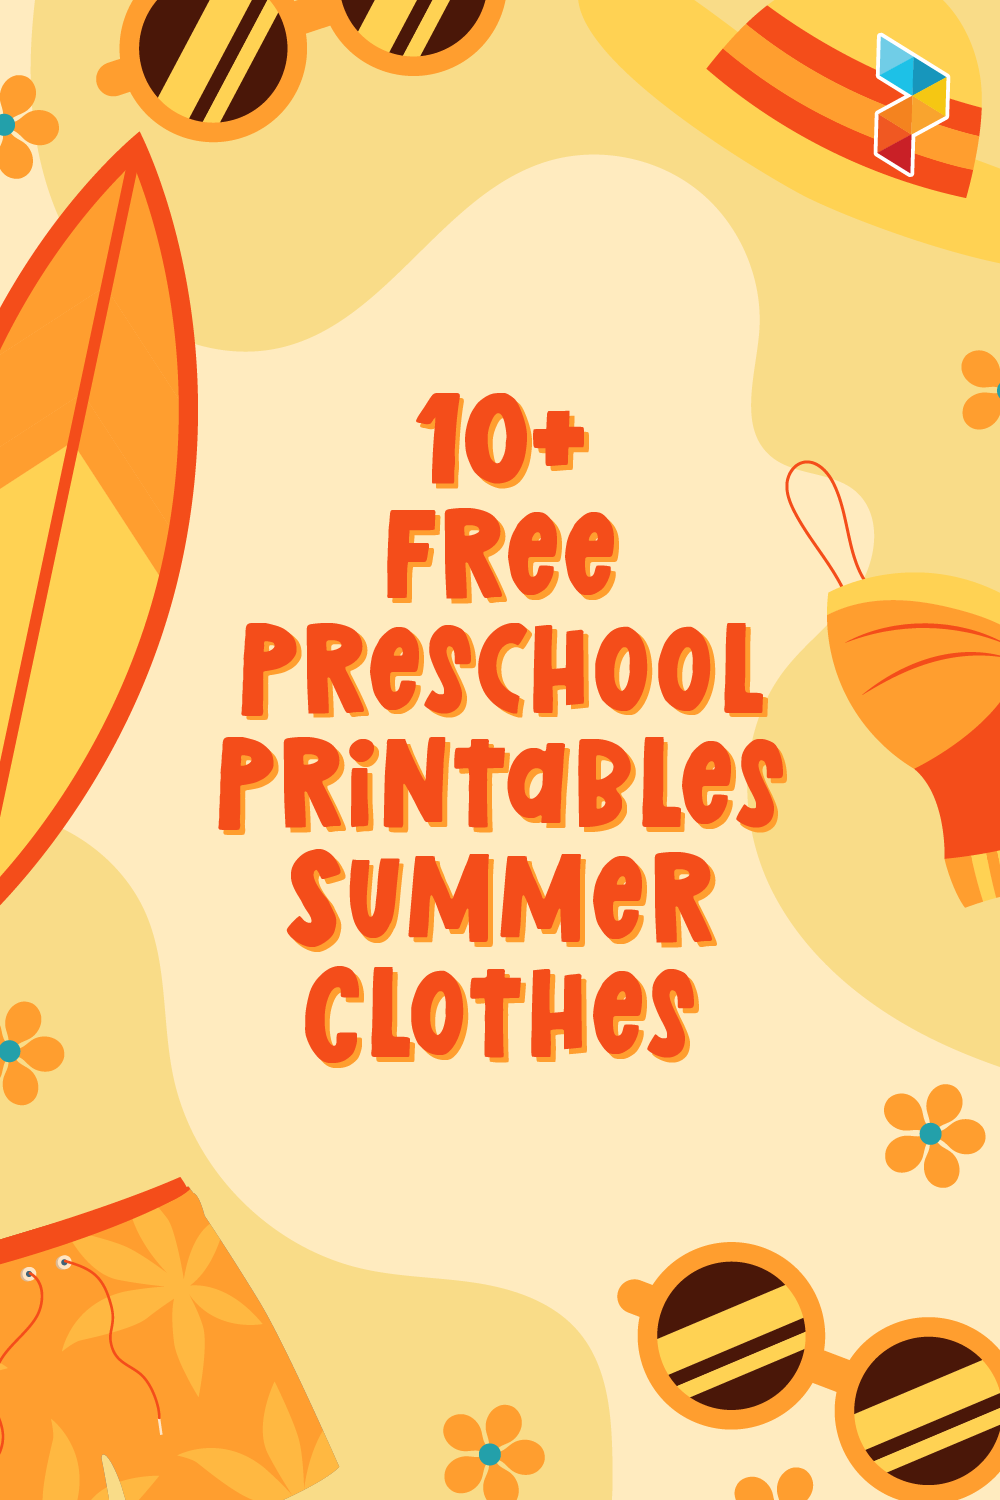 Preschool Summer Clothes